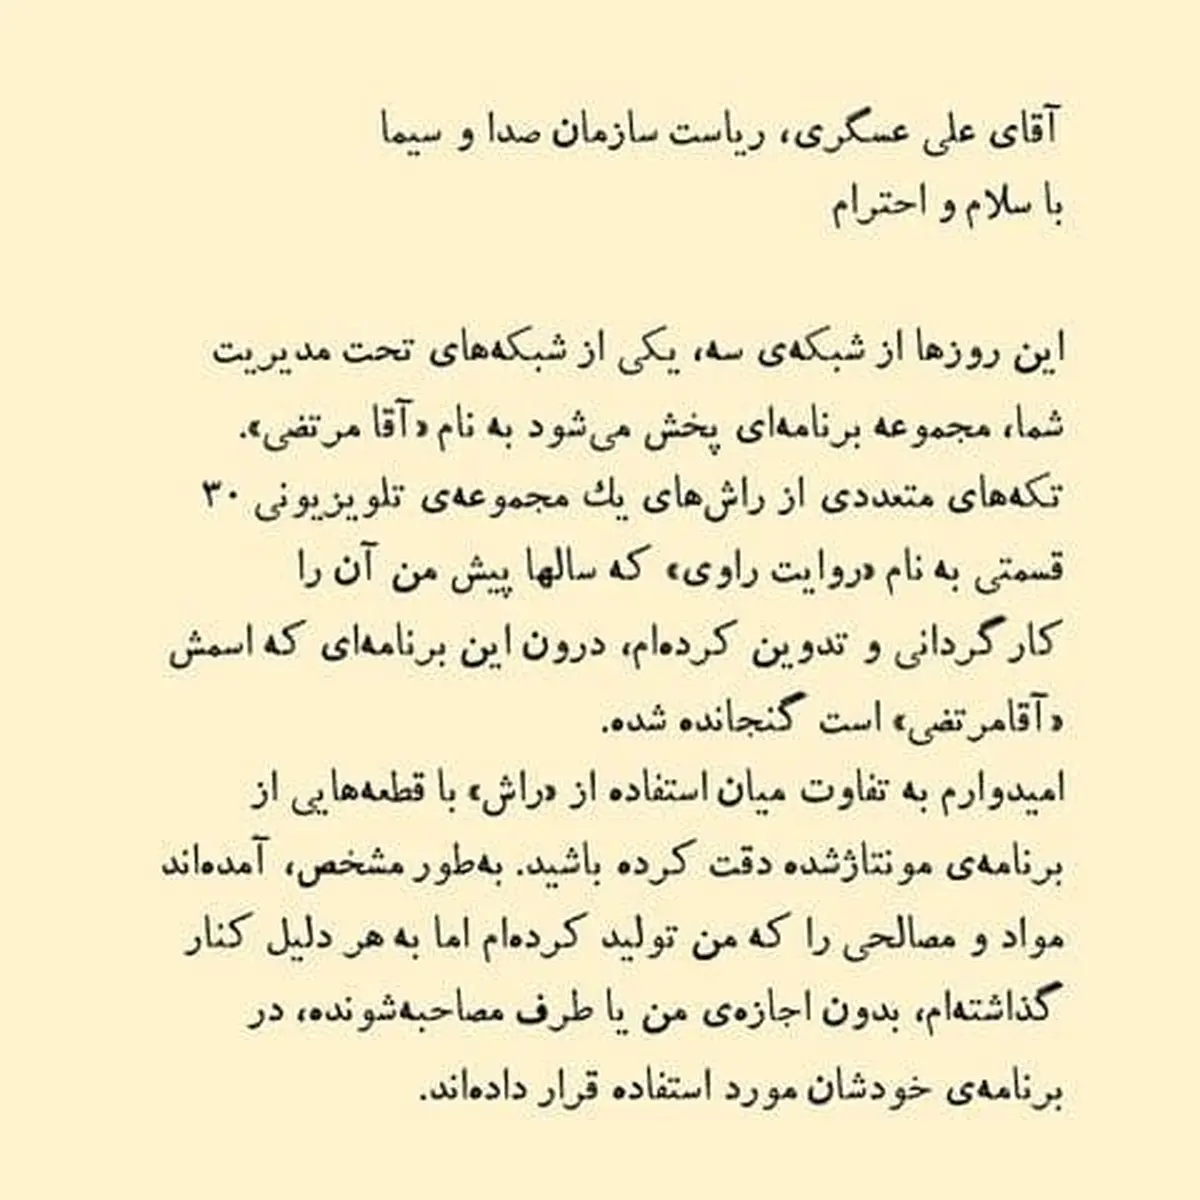 نامه معززی‌نیا، روزنامه نگار و داماد شهید آوینی به رییس صداوسیما پیرامون مستند این سازمان درباره شهید آوینی: بدون اجازه، از راش‌های من استفاده کرده‌اند 